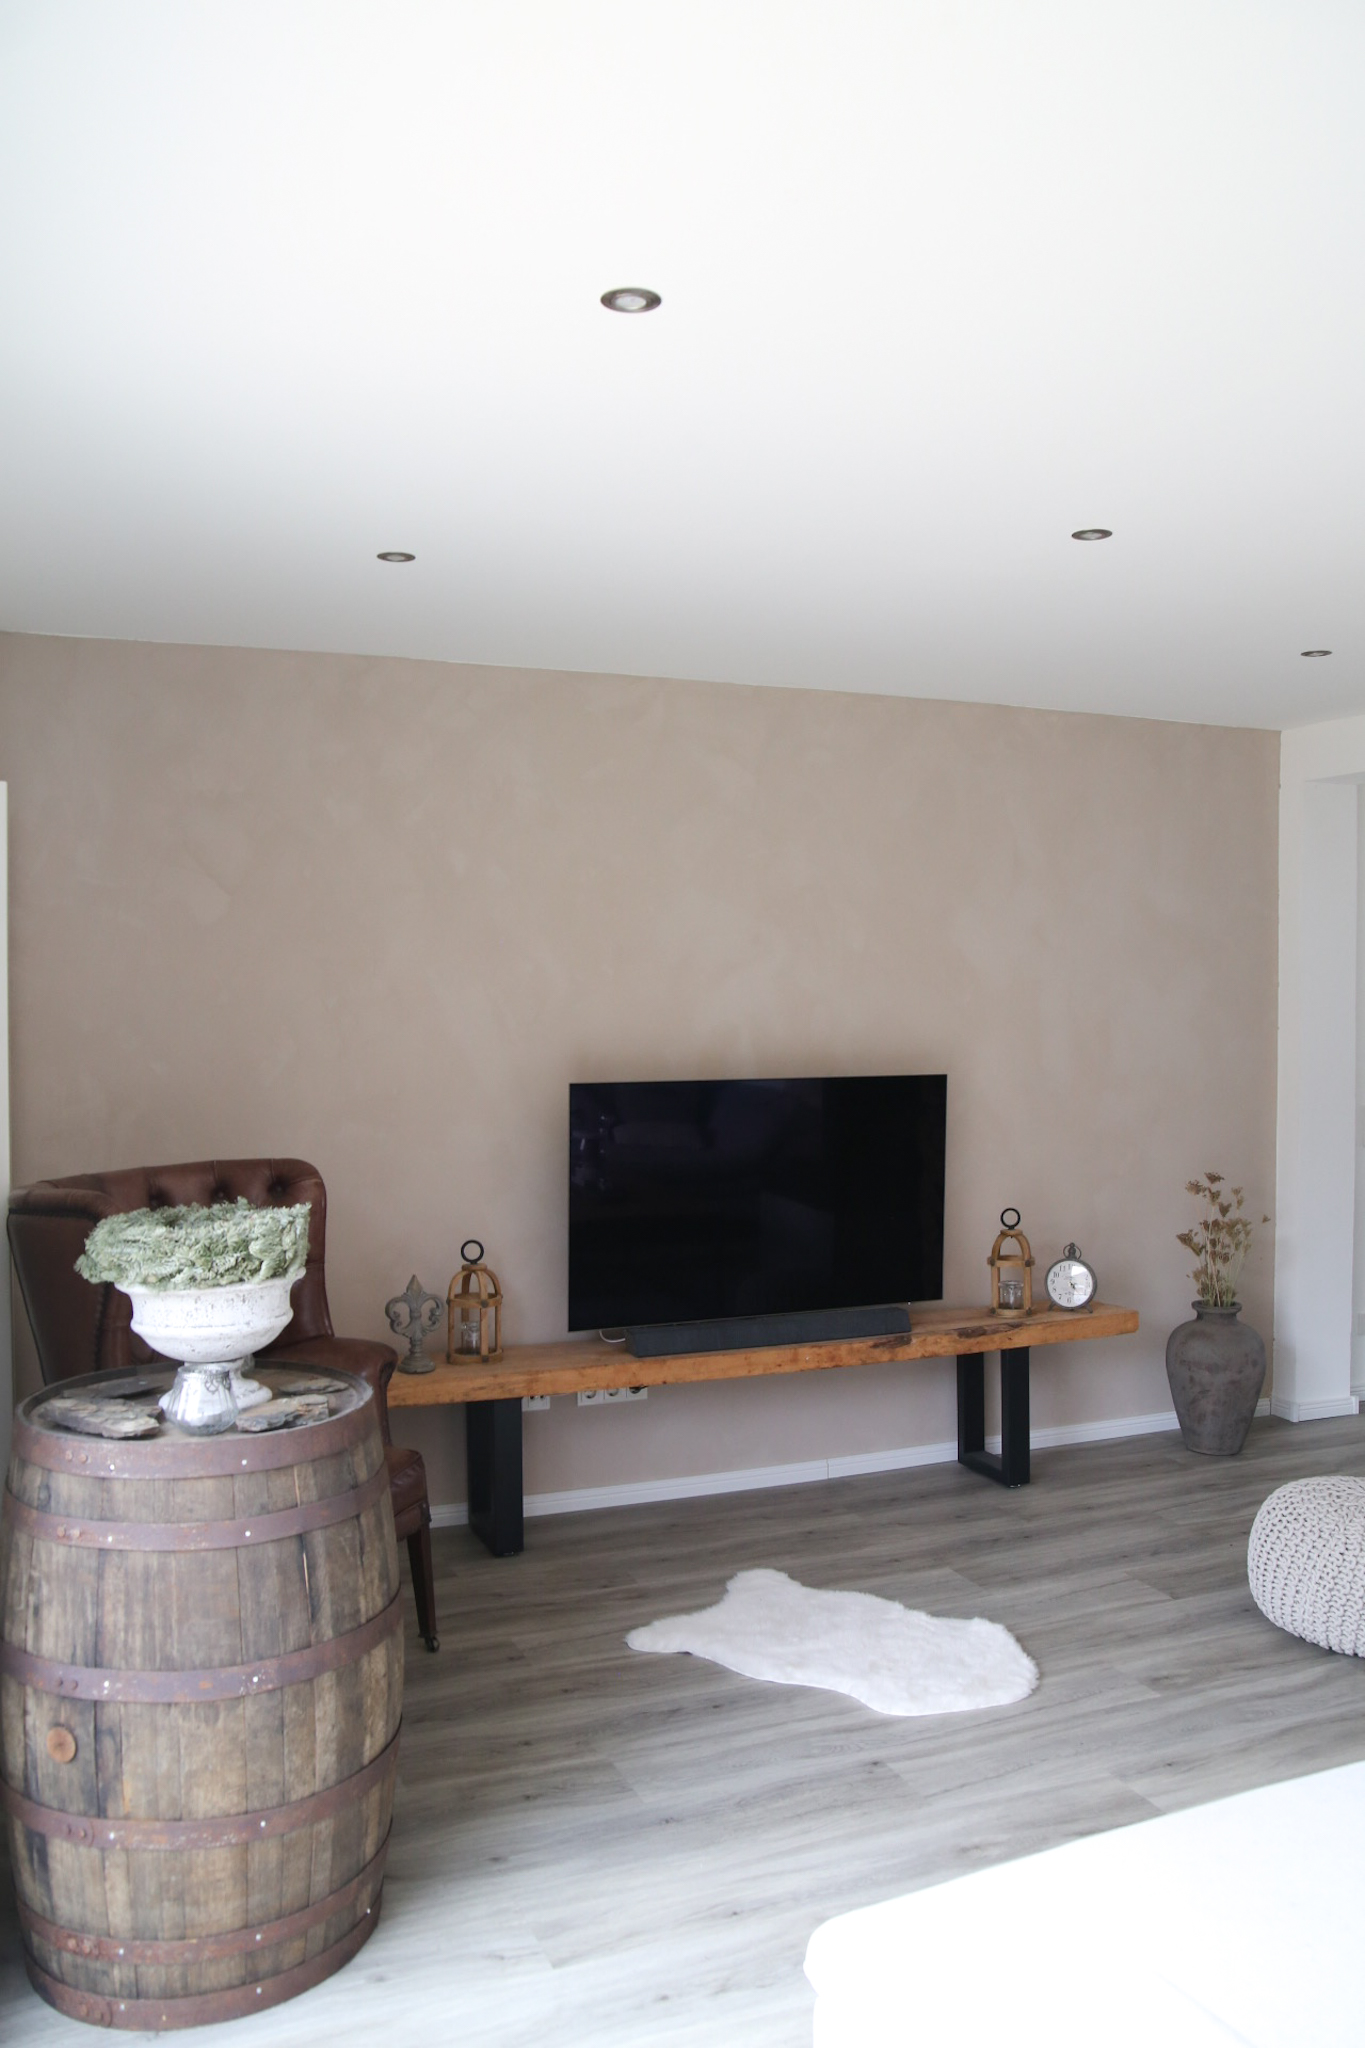 Haussanierung – Verwandlung im Wohnzimmer mit Wandfarbe von Kalk Litir – Der Vorher/Nachher Vergleich Inneneinrichtung renovieren umbauen sanieren Sanierung Renovierung 2021